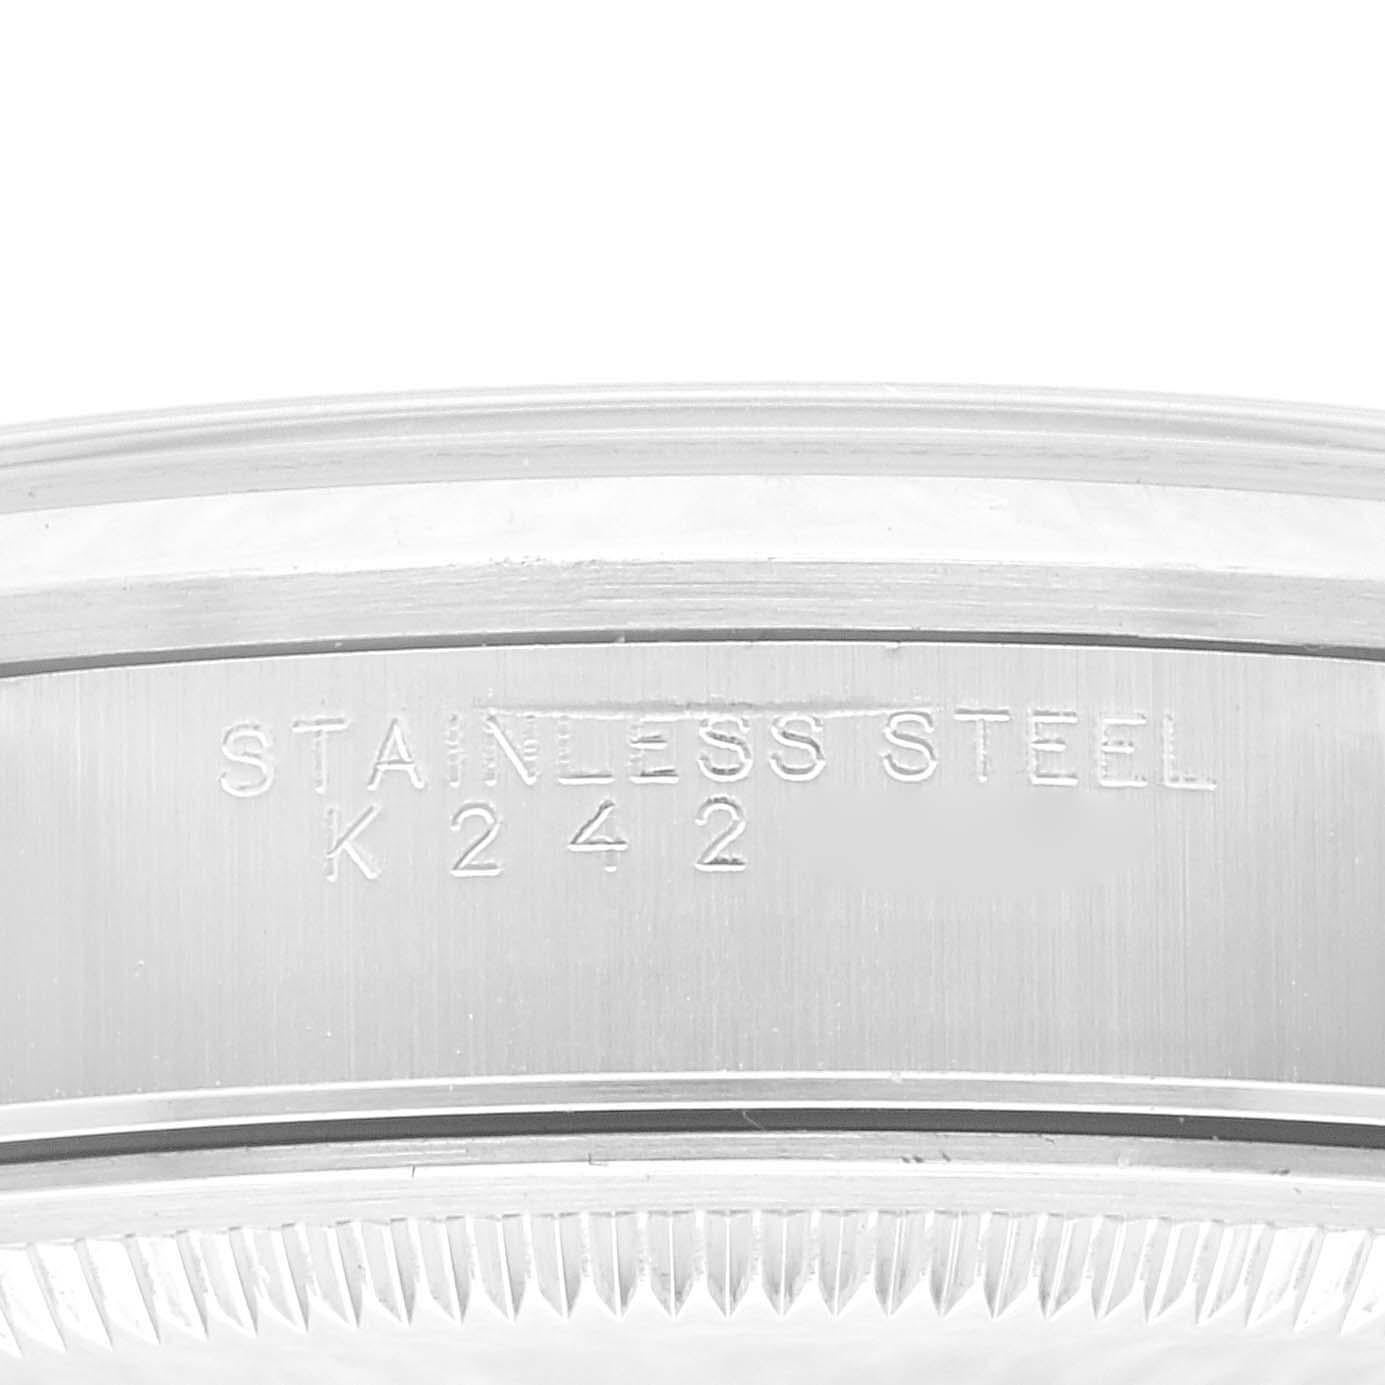 Rolex Datum Silber Zifferblatt glatte Lünette Stahl Herrenuhr 15200. Offiziell zertifiziertes Chronometerwerk mit automatischem Aufzug. Austerngehäuse aus Edelstahl mit einem Durchmesser von 34.0 mm. Rolex Logo auf der Krone. Glatte Lünette aus